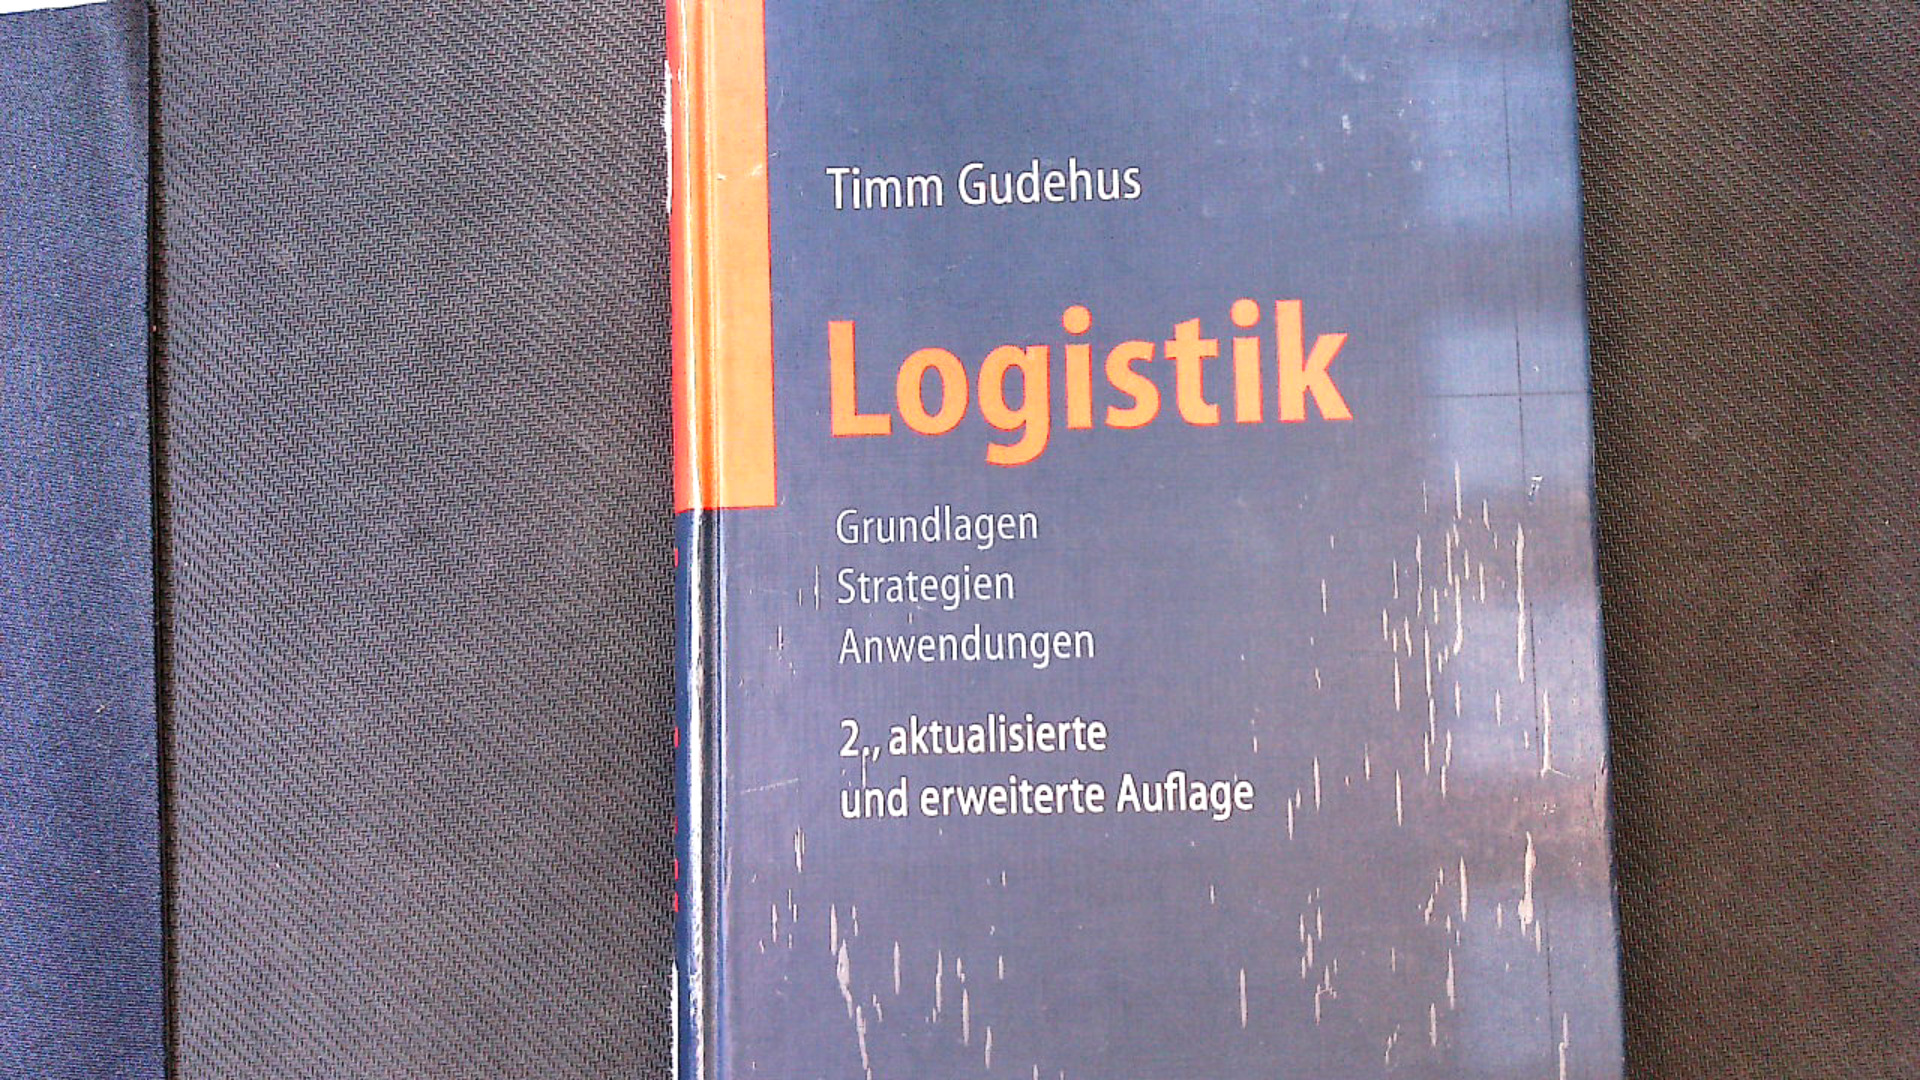 Logistik: Grundlagen - Strategien - Anwendungen. Engineering online library - Gudehus, Timm